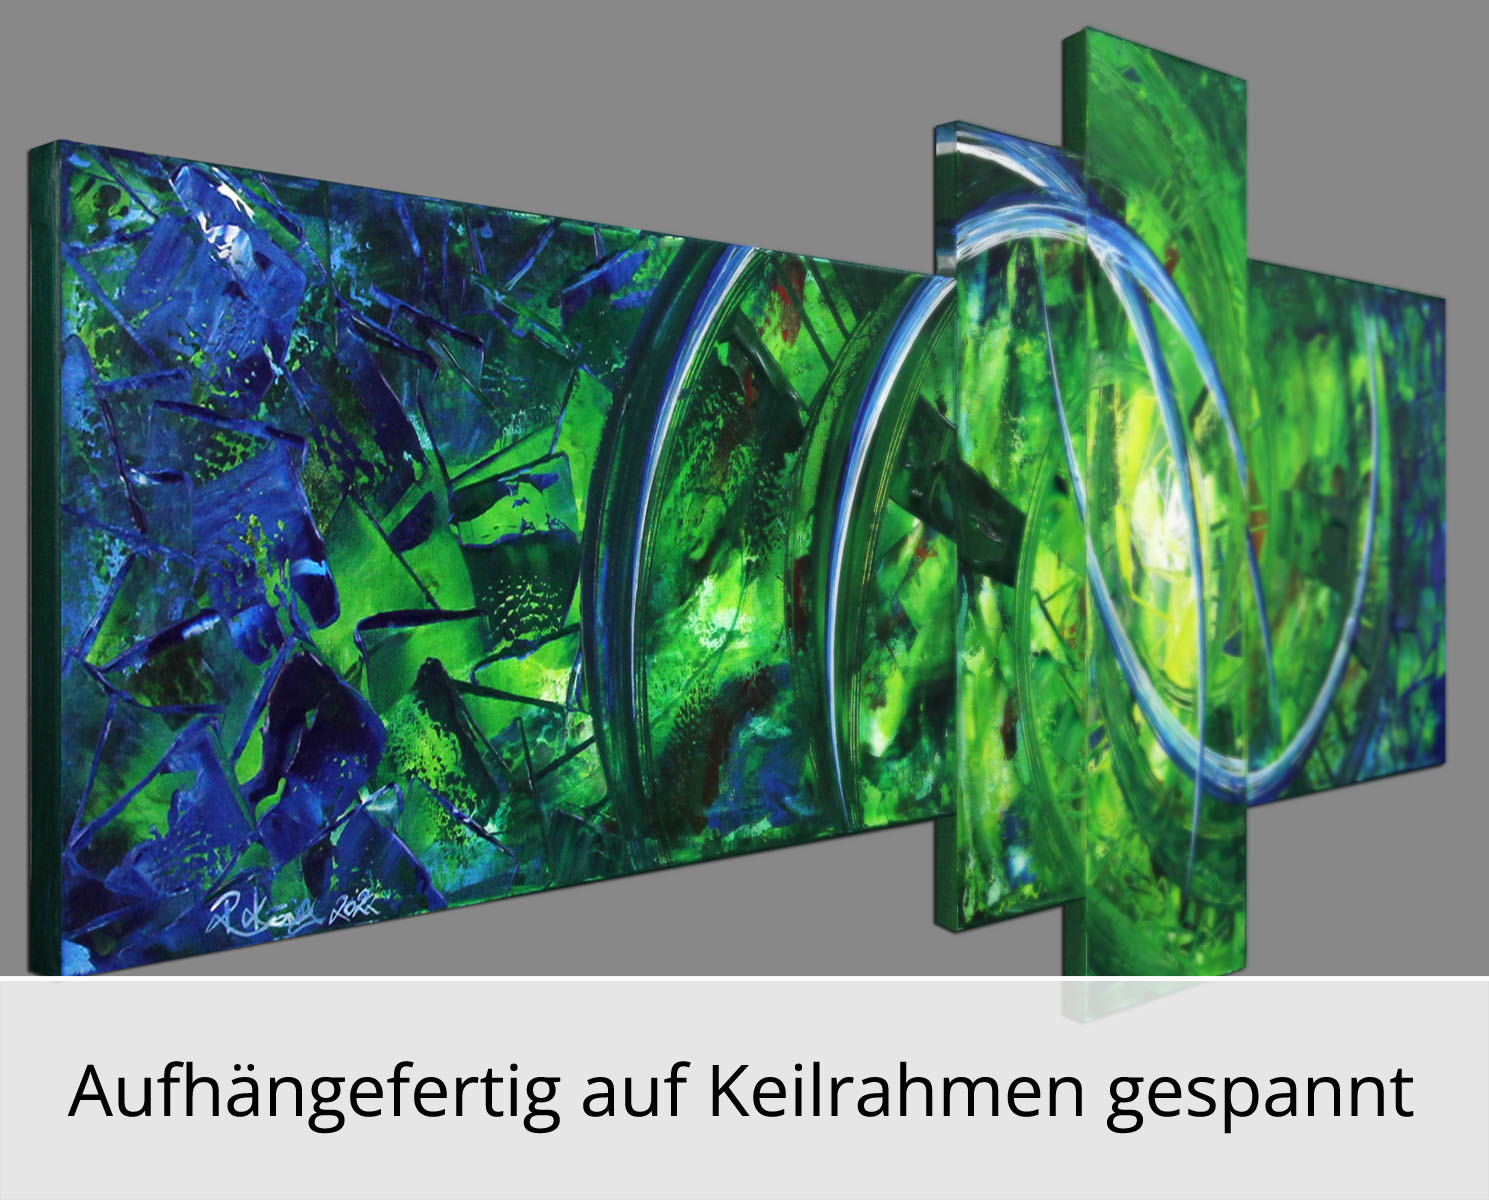 R. König: "Shining Colours VI", mehrteilige Acrylbilder, Originalgemälde (Unikat)